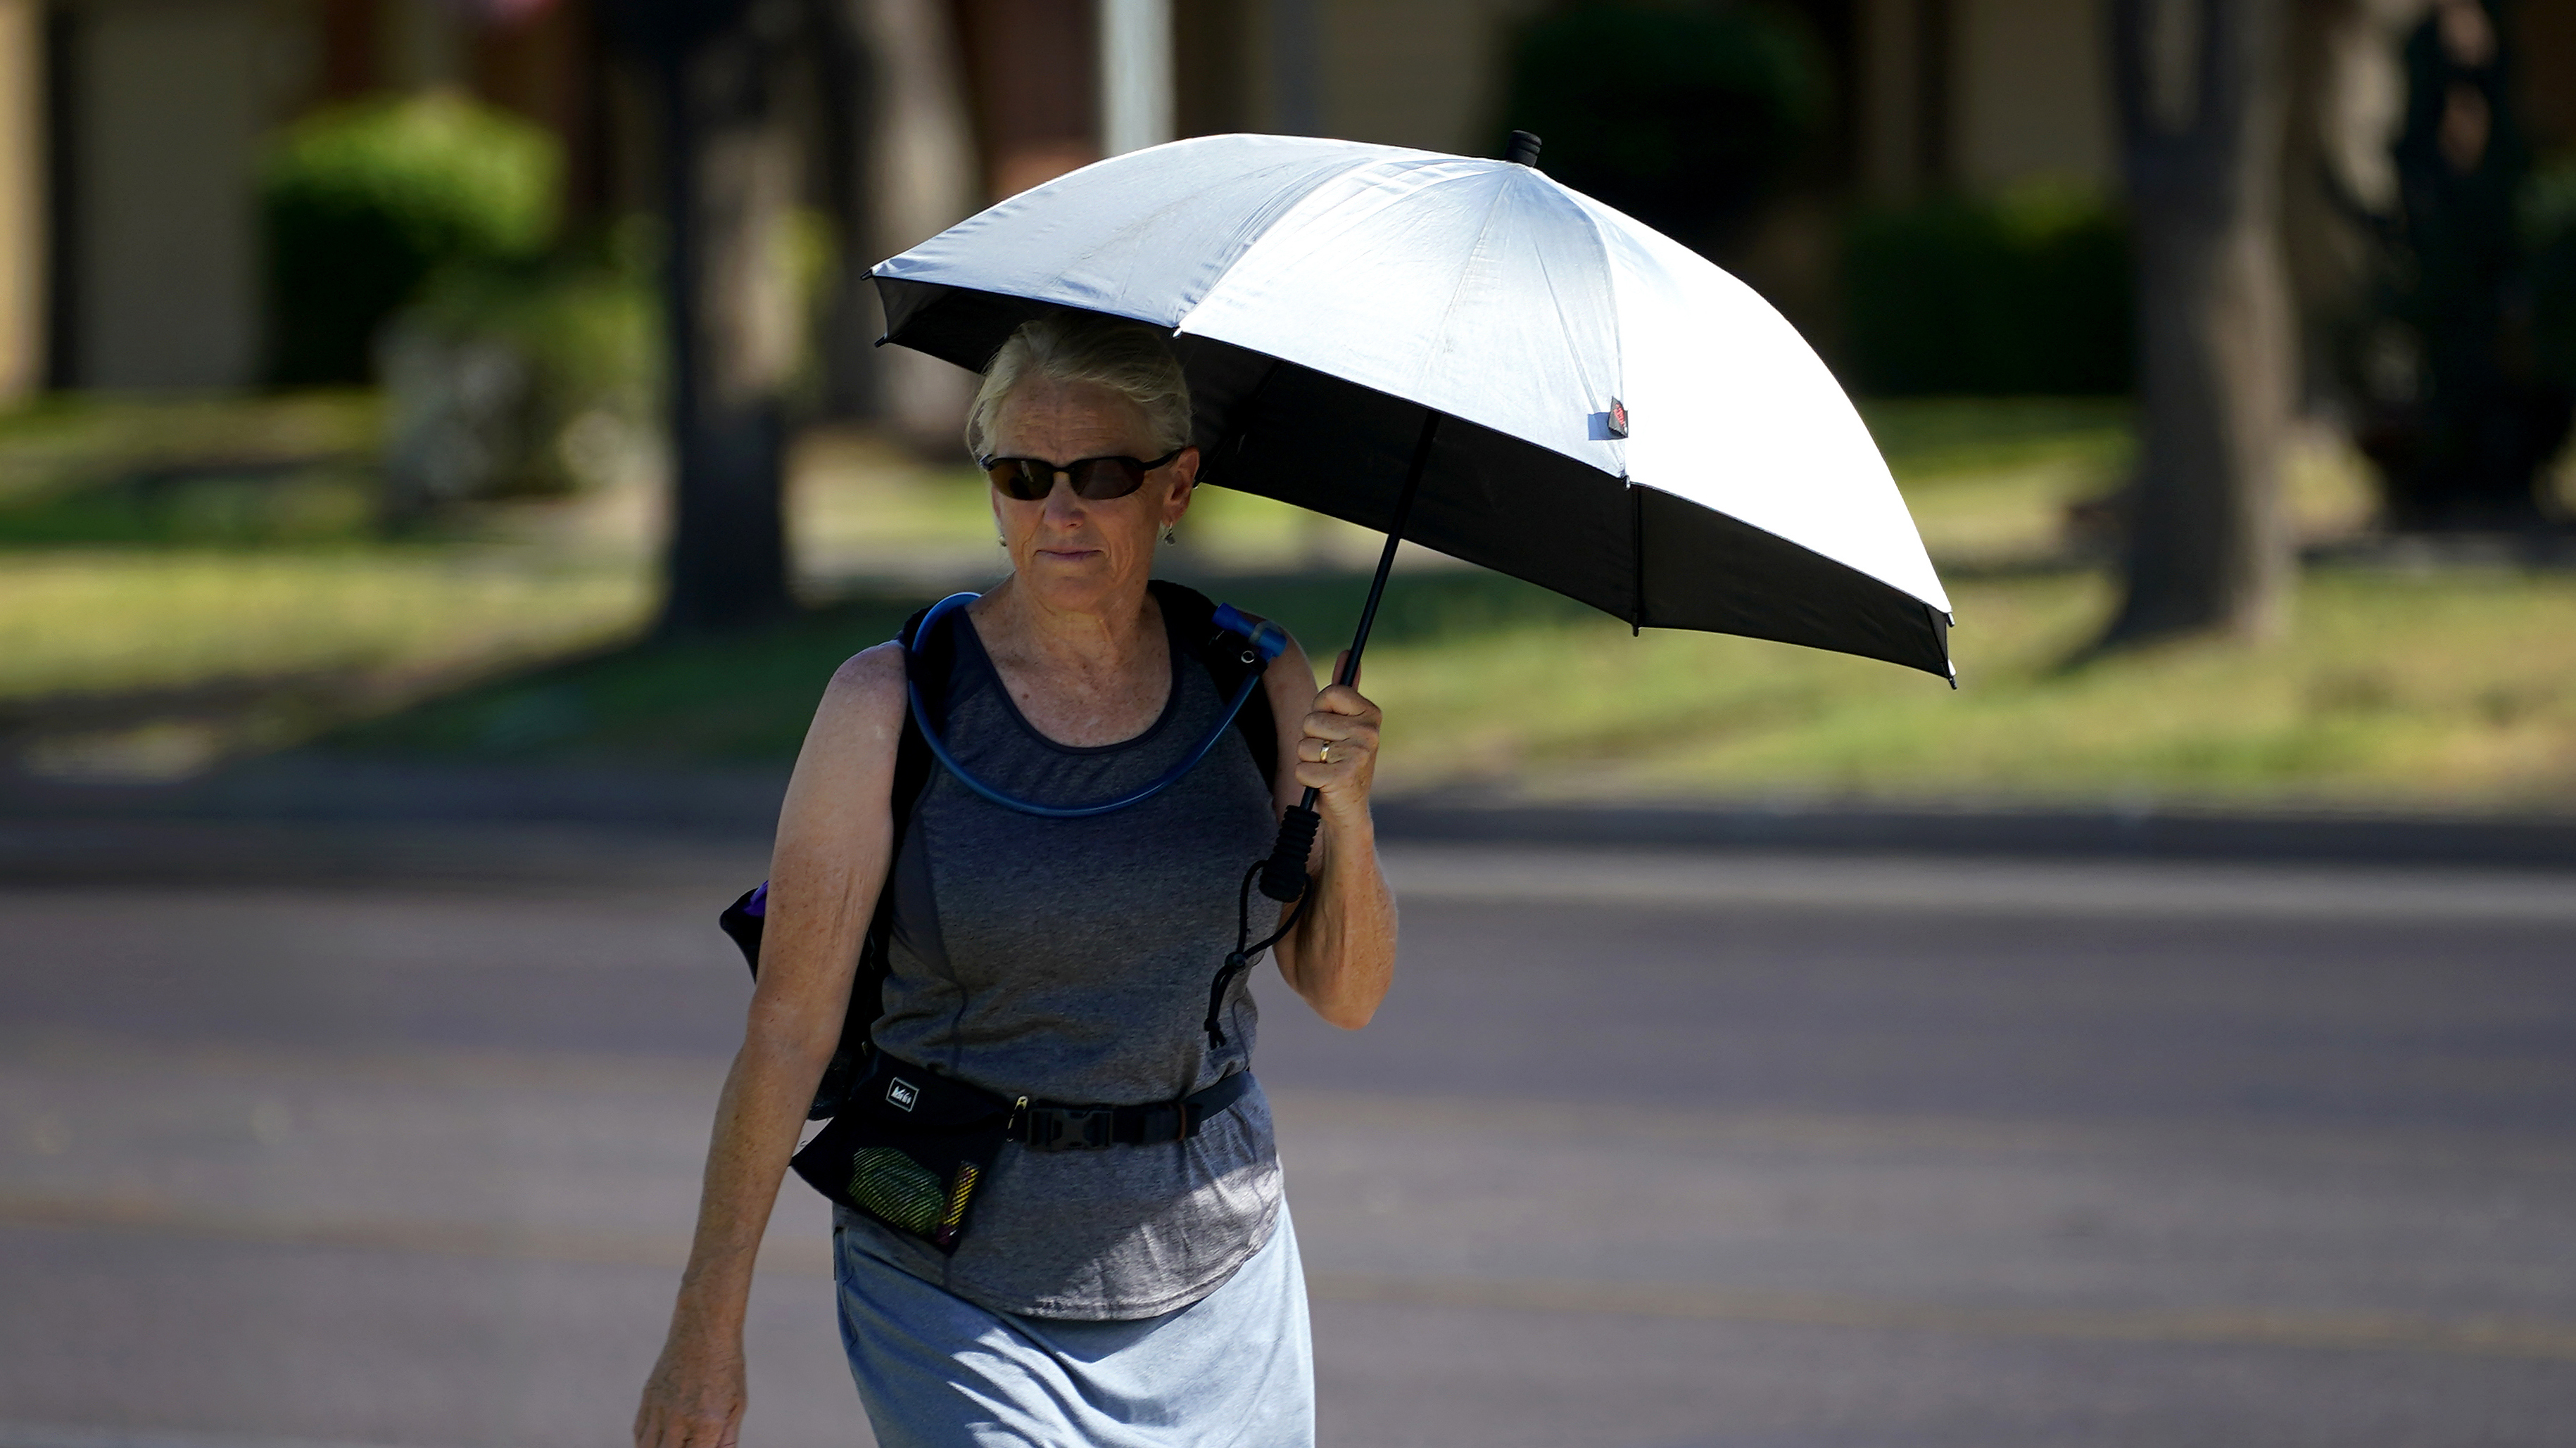 Una señora usa una sombrilla como sombra para combatir las altas temperaturas, en Phoenix, Arizona.